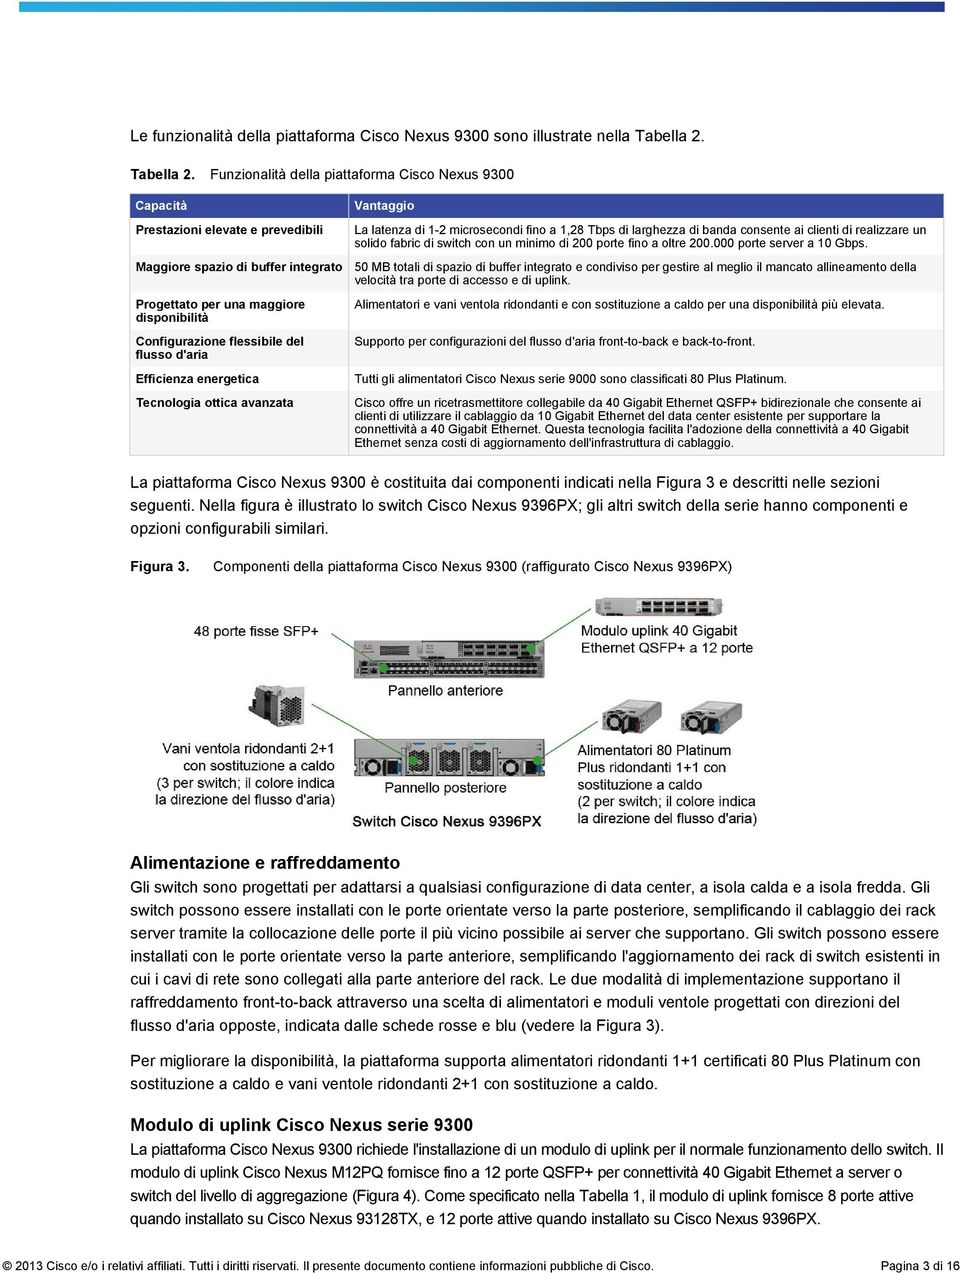 Funzionalità della piattaforma Cisco Nexus 9300 Capacità Prestazioni elevate e prevedibili Vantaggio La latenza di 1-2 microsecondi fino a 1,28 Tbps di larghezza di banda consente ai clienti di